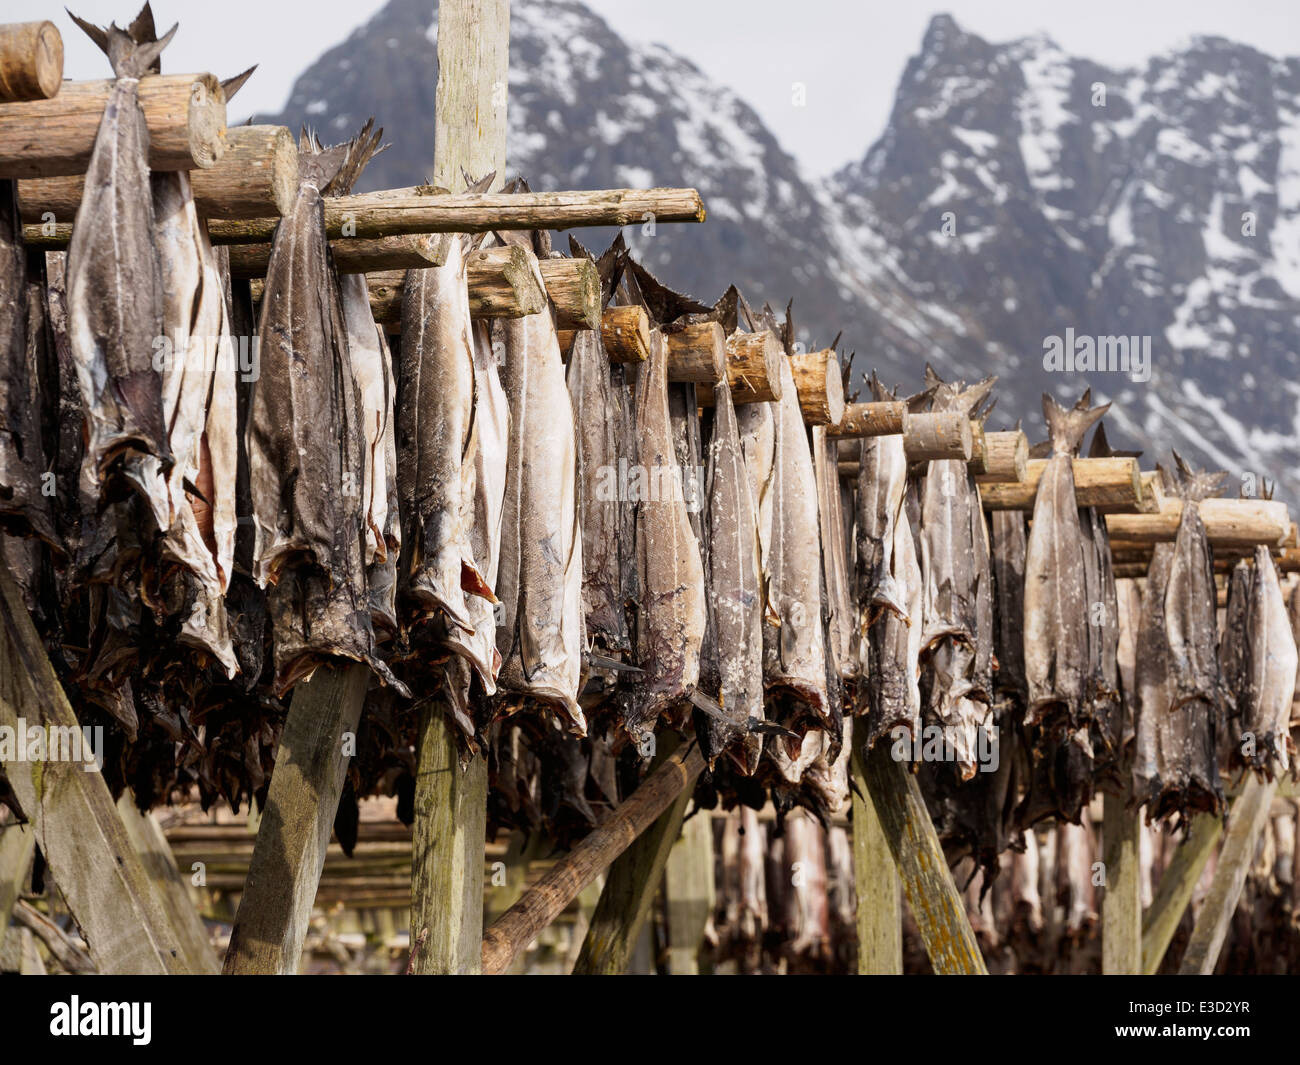 Stoccafisso (cod) è appesa ad asciugare su un rack di legno in Henningsvaer sulle isole Lofoten in Norvegia. Foto Stock